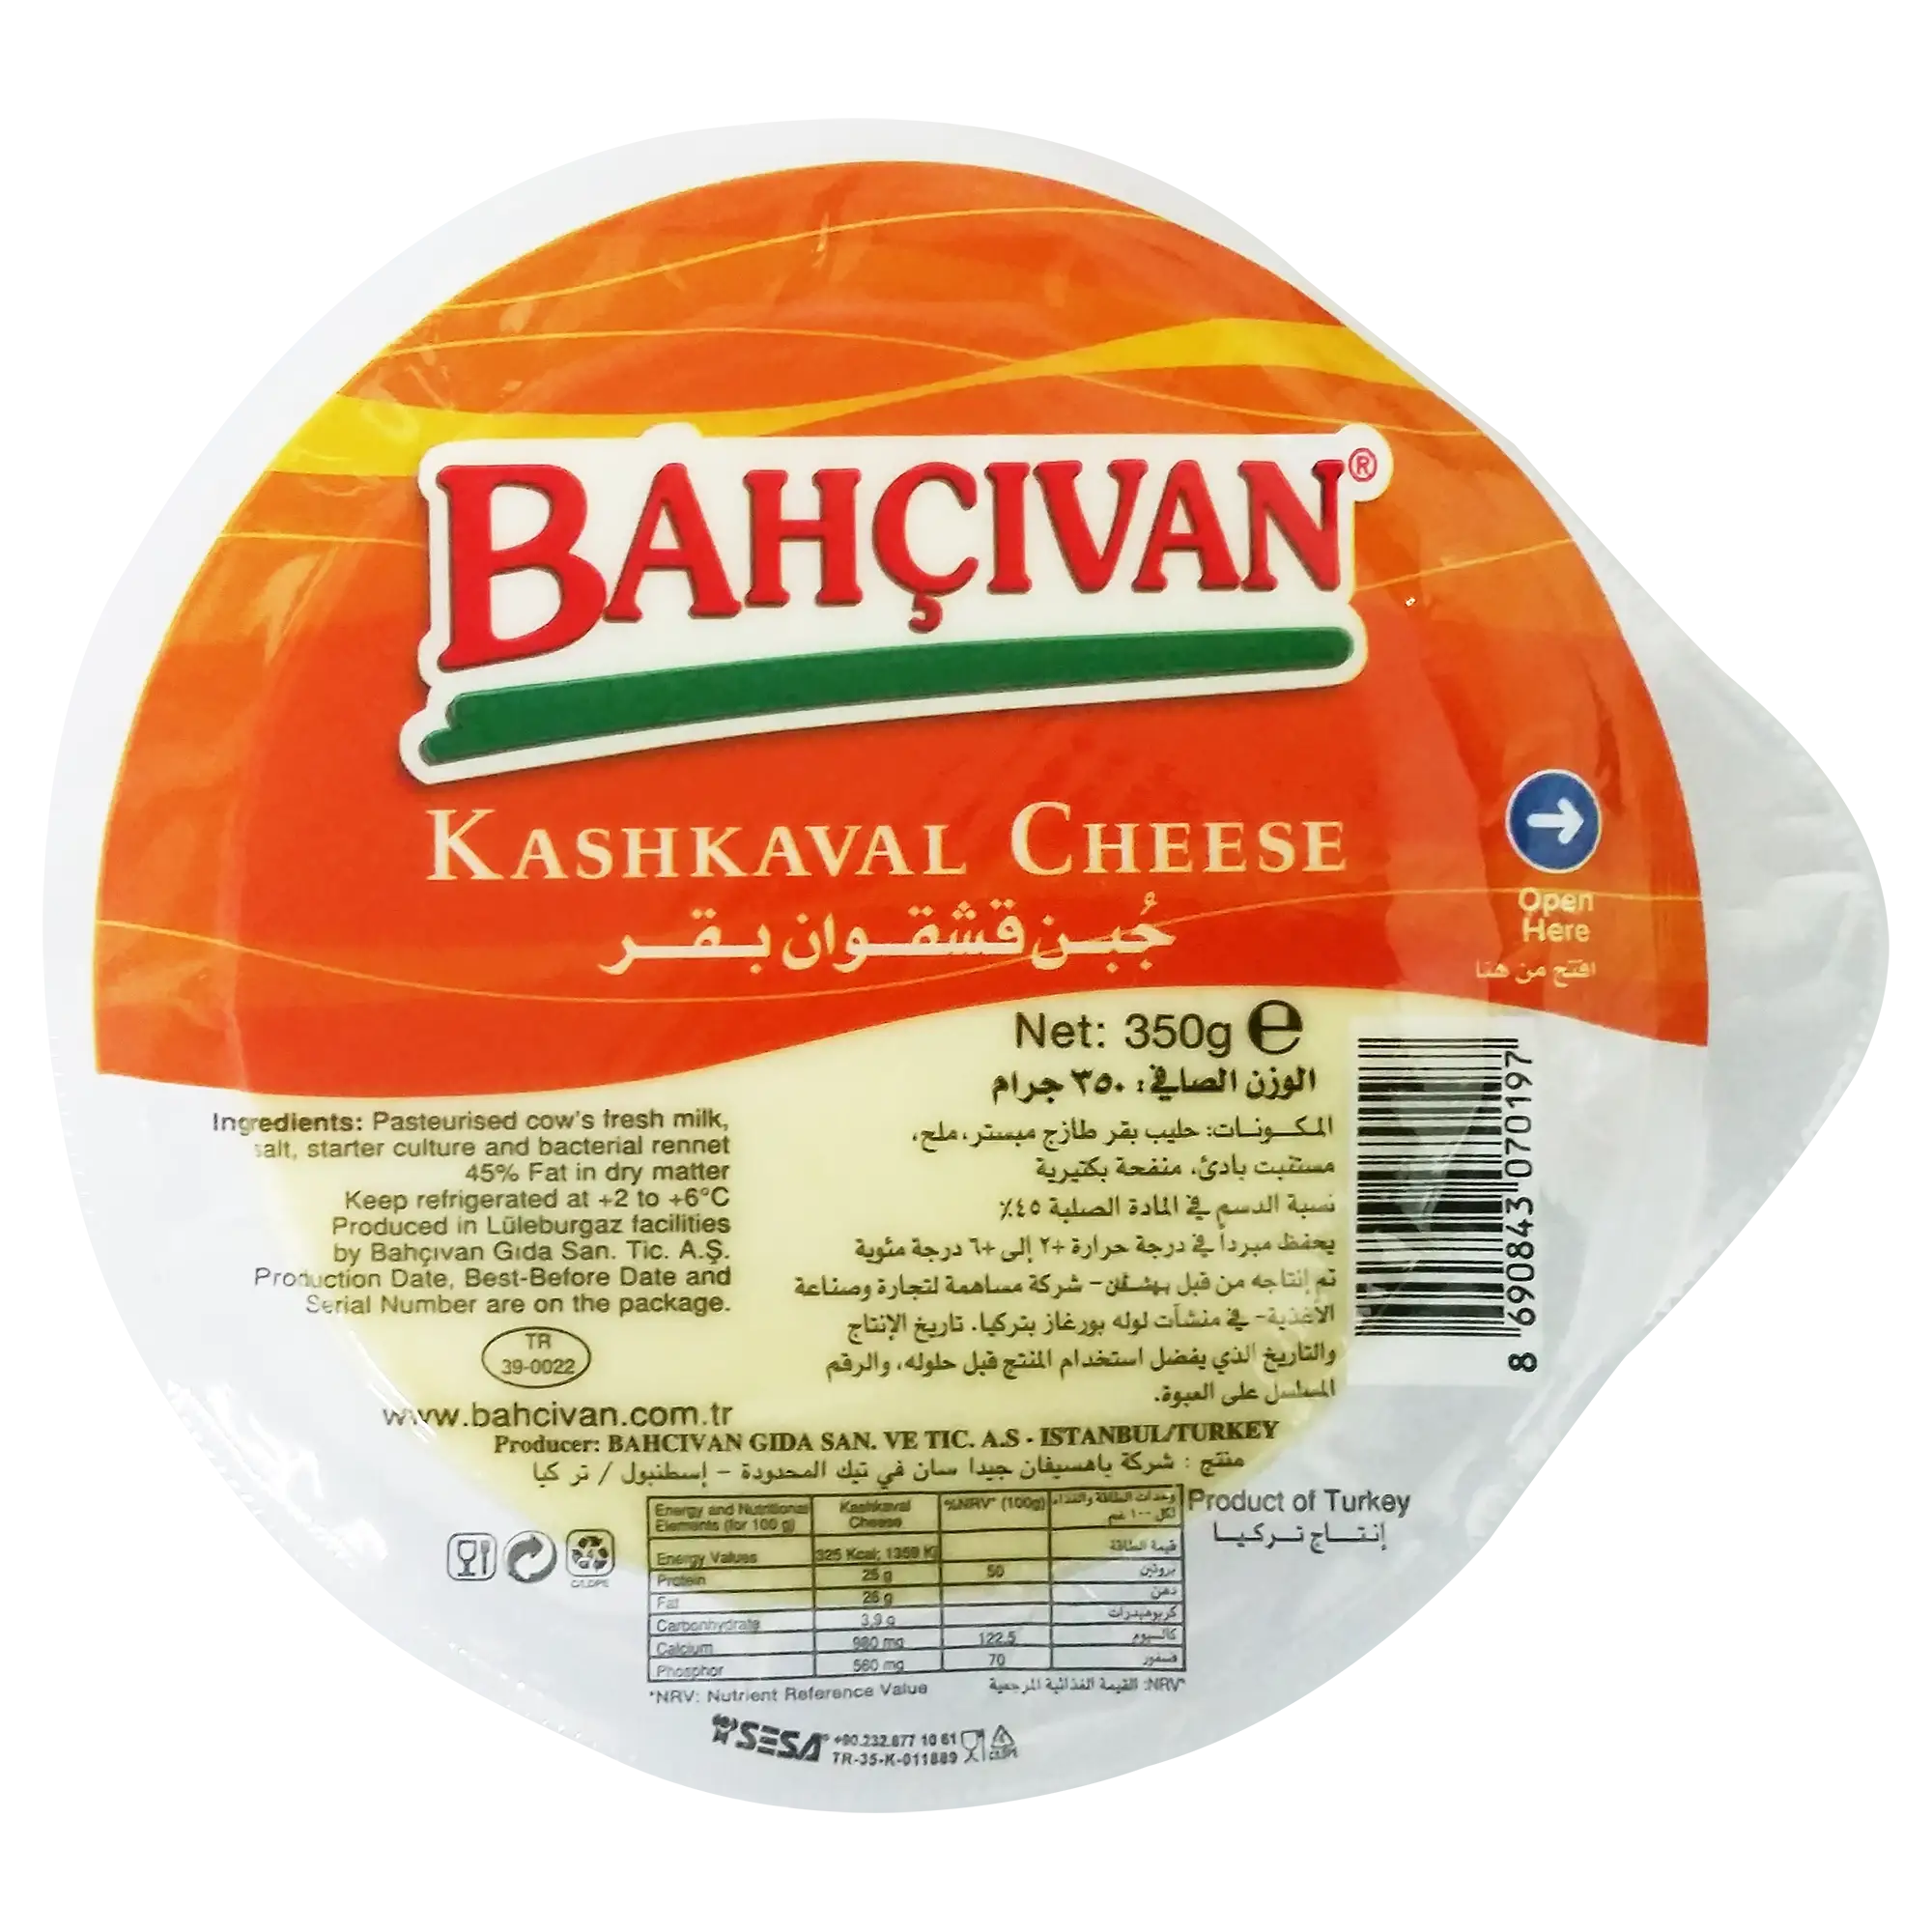 KAC - Bahcivan Kashkaval Cheese Small